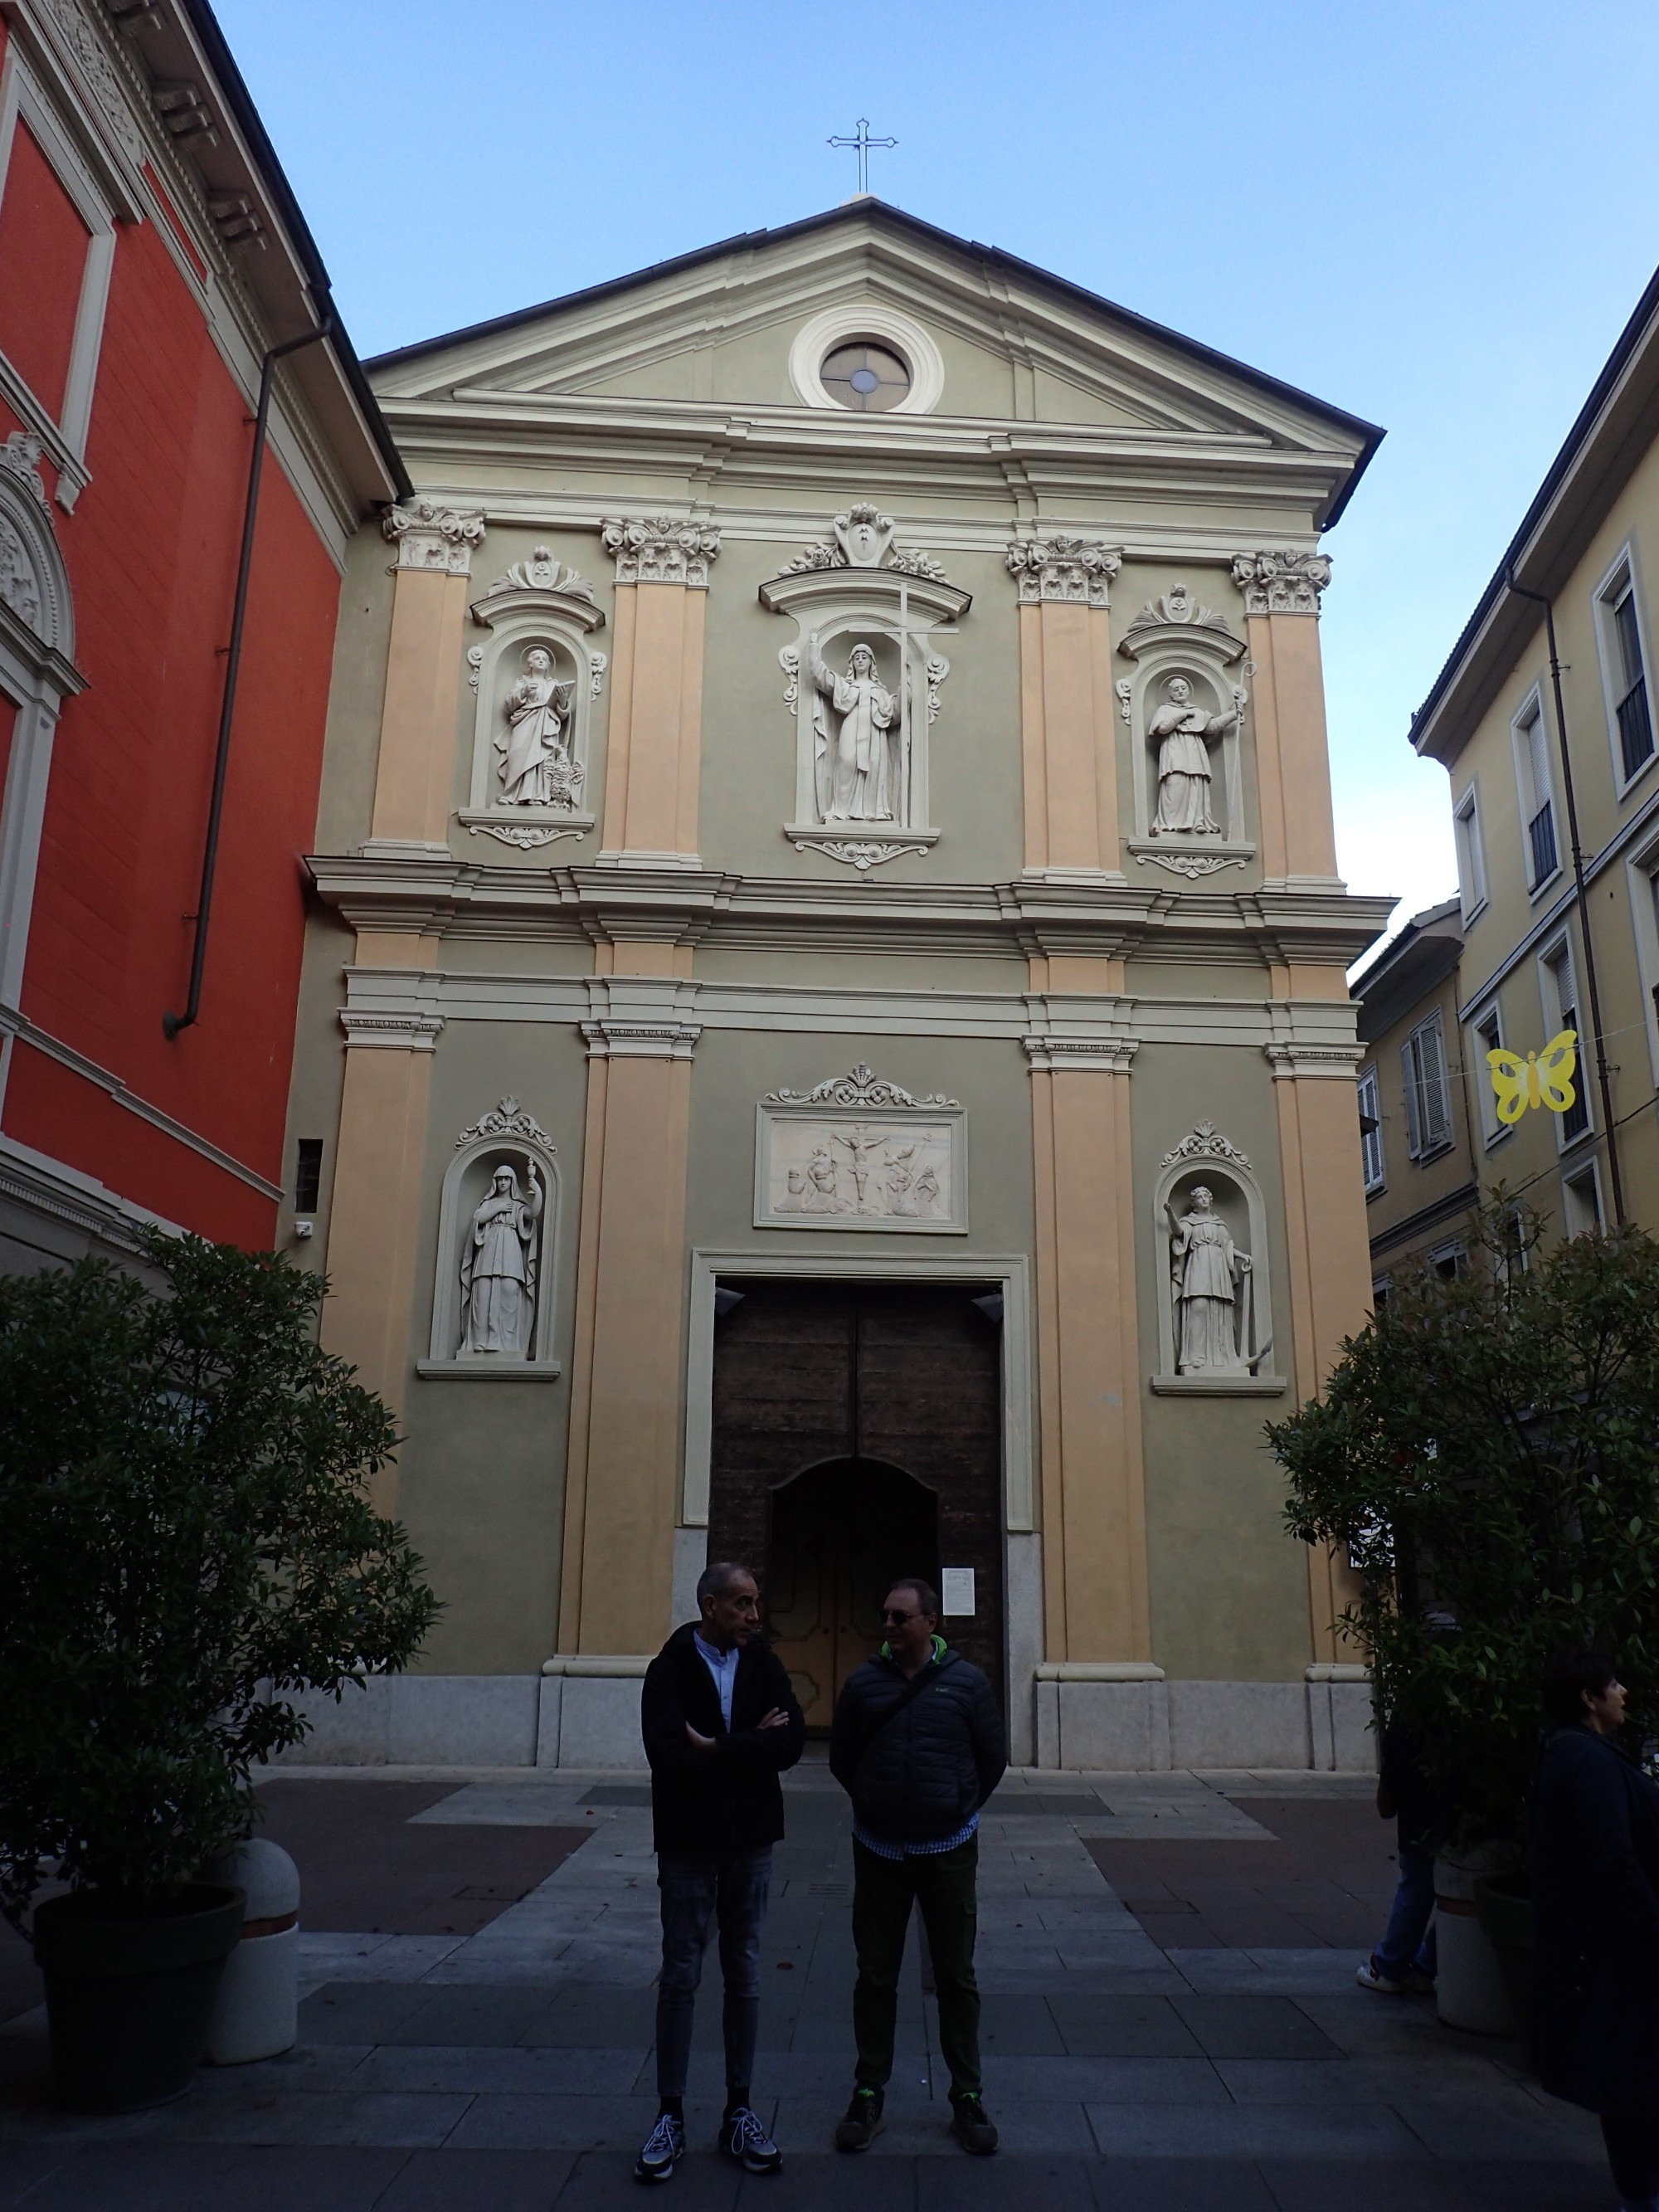 Chiesa San Giovannino, Italy